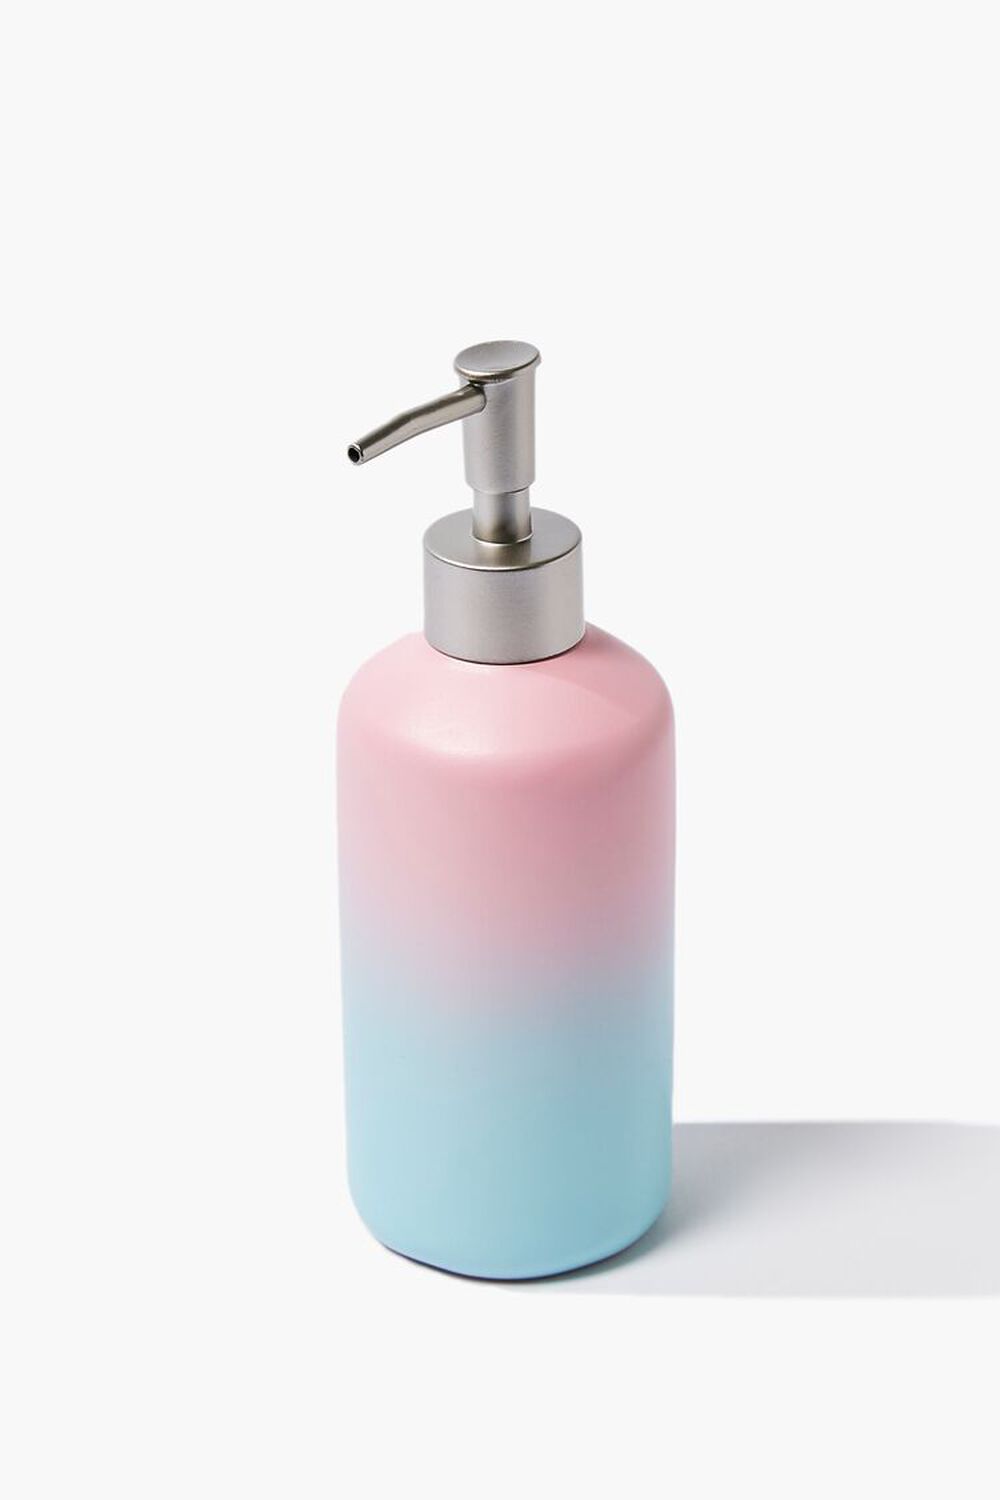 PINK/BLUE Ombre Resin Soap Dispenser, image 1